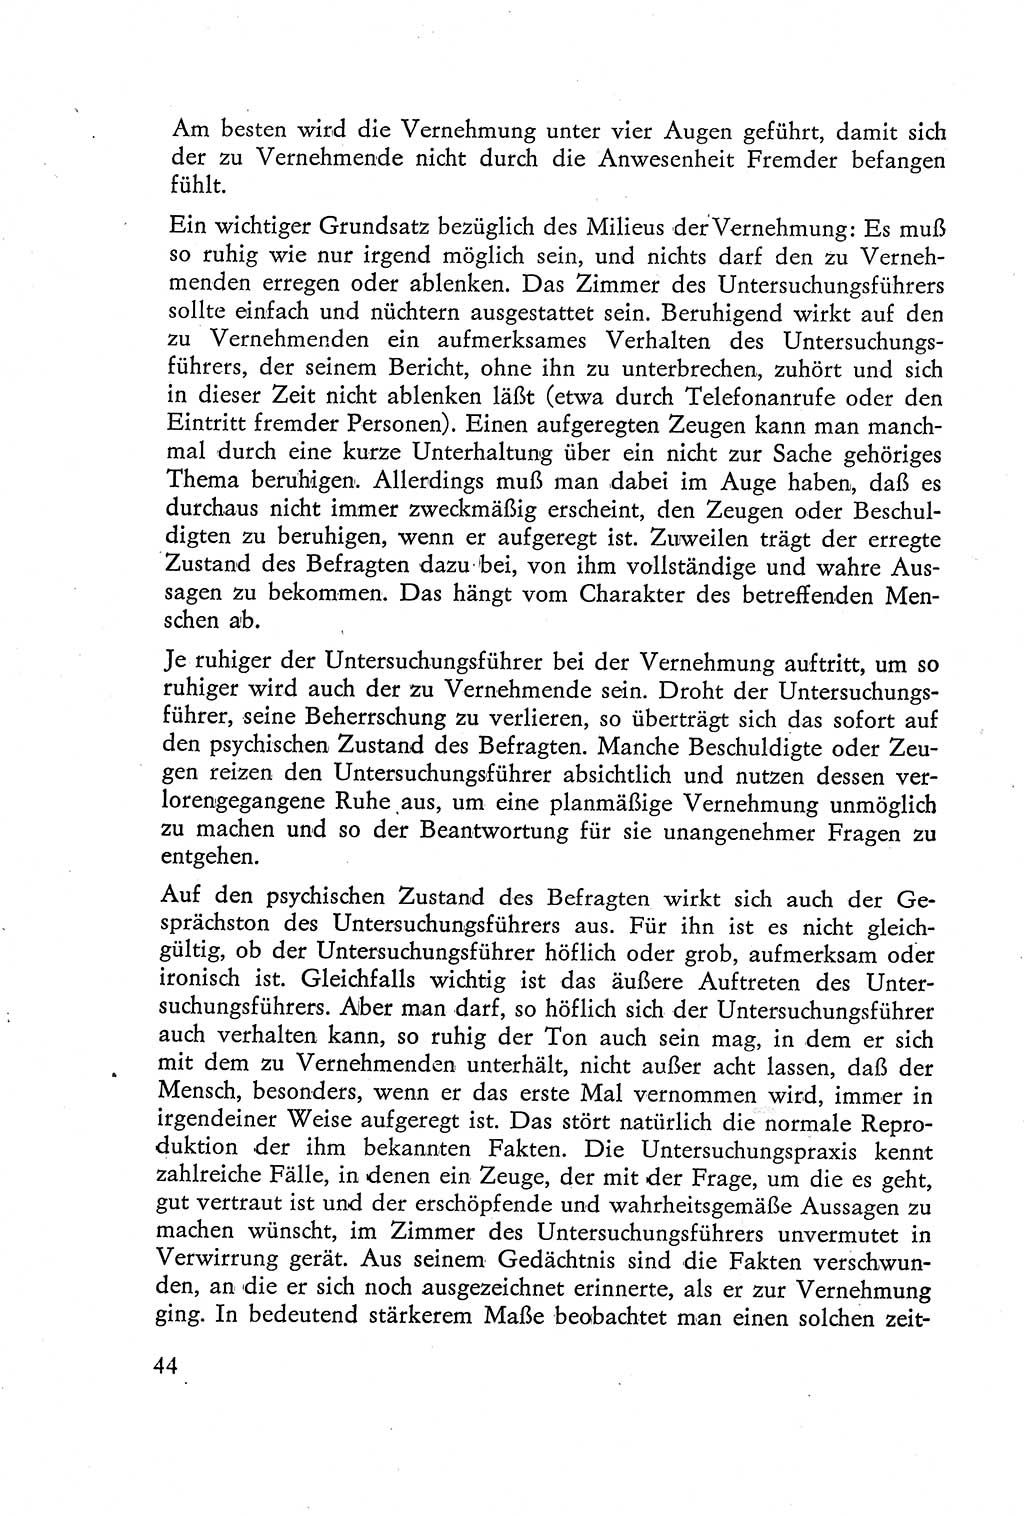 Die Vernehmung [Deutsche Demokratische Republik (DDR)] 1960, Seite 44 (Vern. DDR 1960, S. 44)